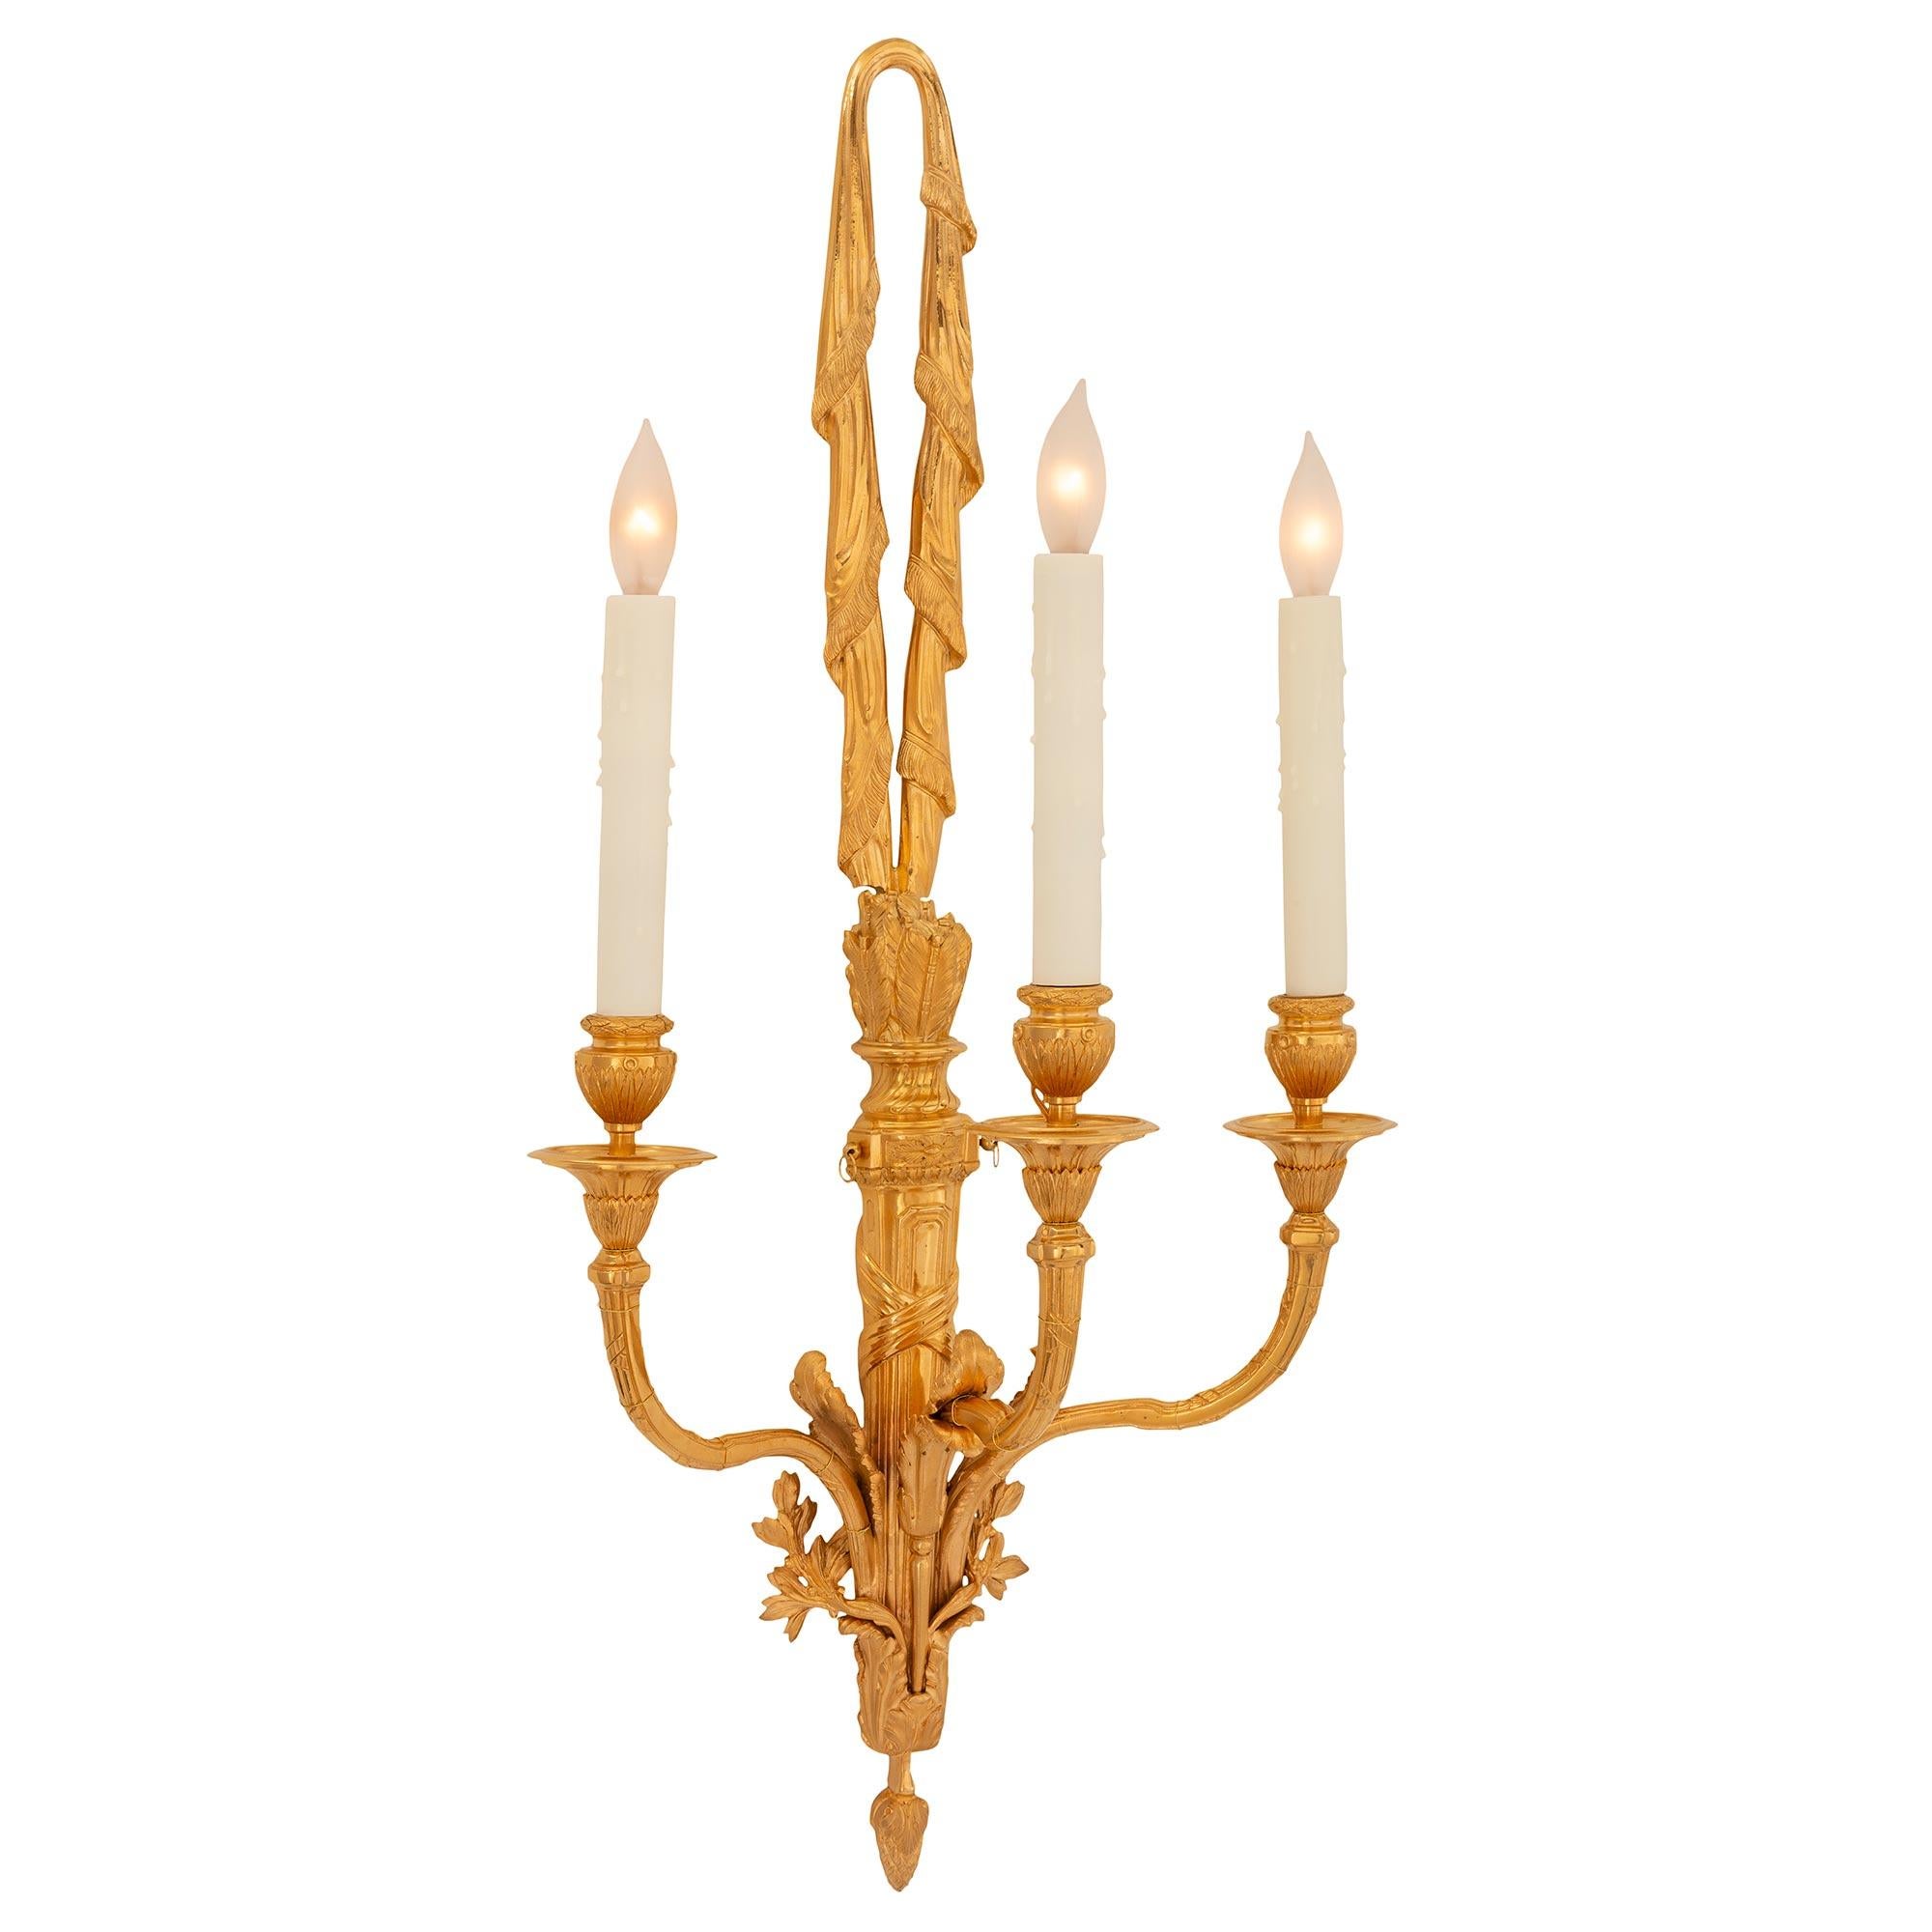 Une paire élégante et très décorative d'appliques en bronze doré d'époque Louis XVI et Napoléon III du XIXe siècle. Chaque applique unique à trois bras est centrée par un charmant épi de faîtage en forme de gland finement détaillé, entouré de